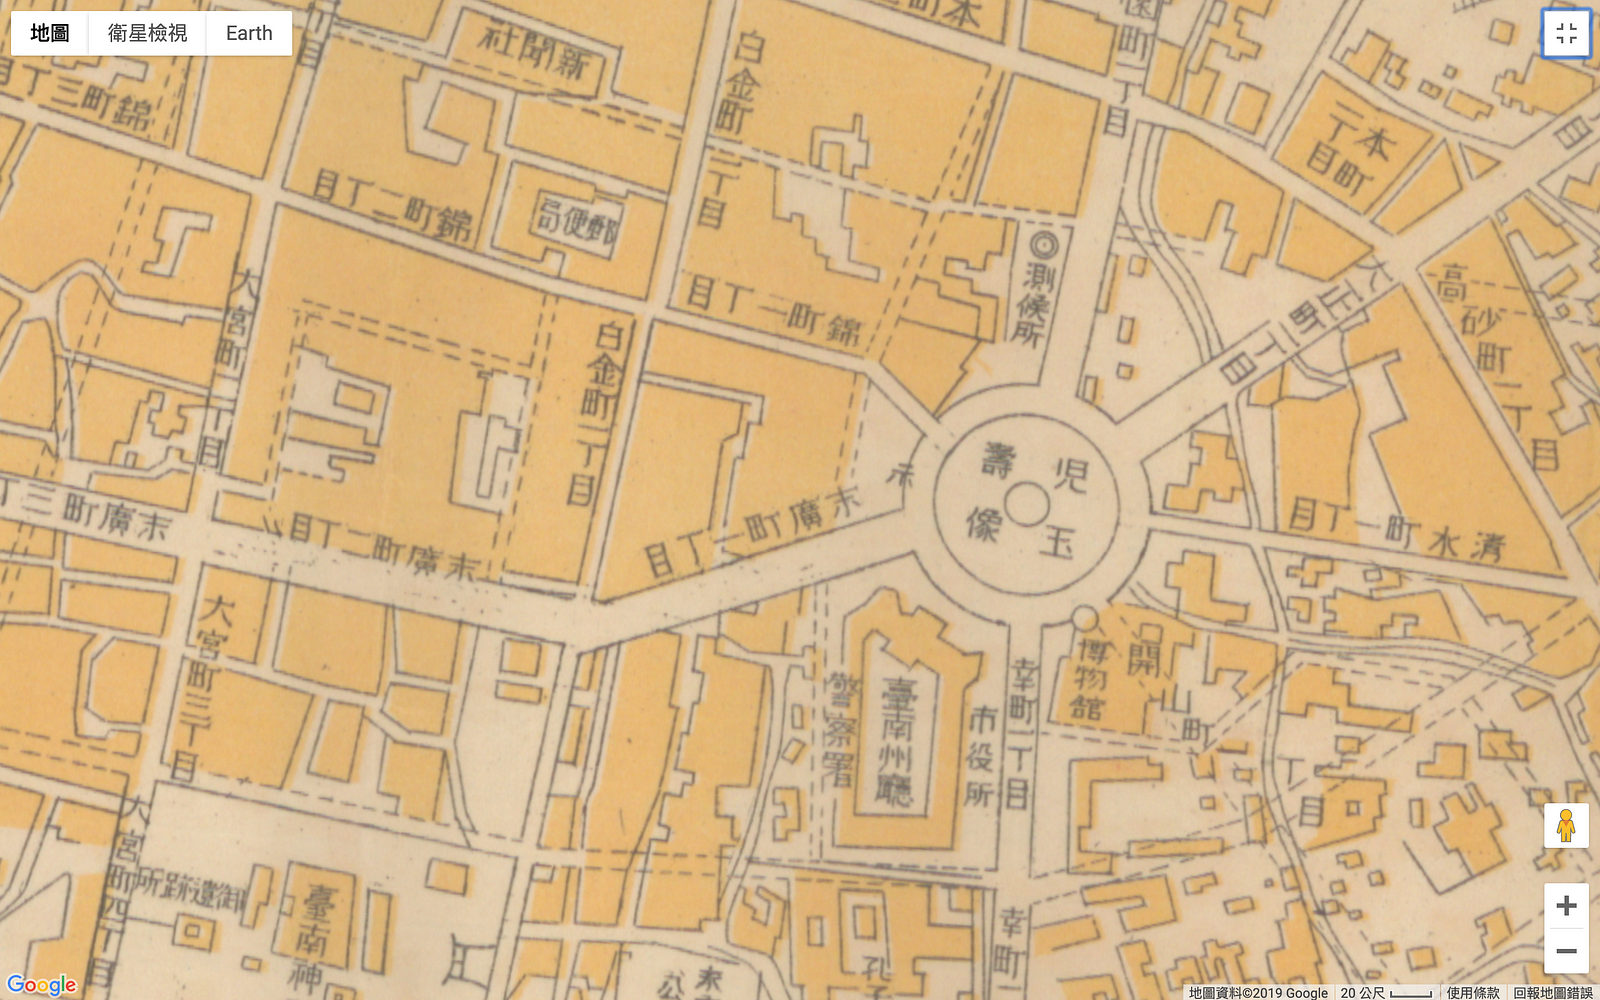 1928年臺南市全圖，時開山路尚未全線開通。原因大概是因為兩廣會館。